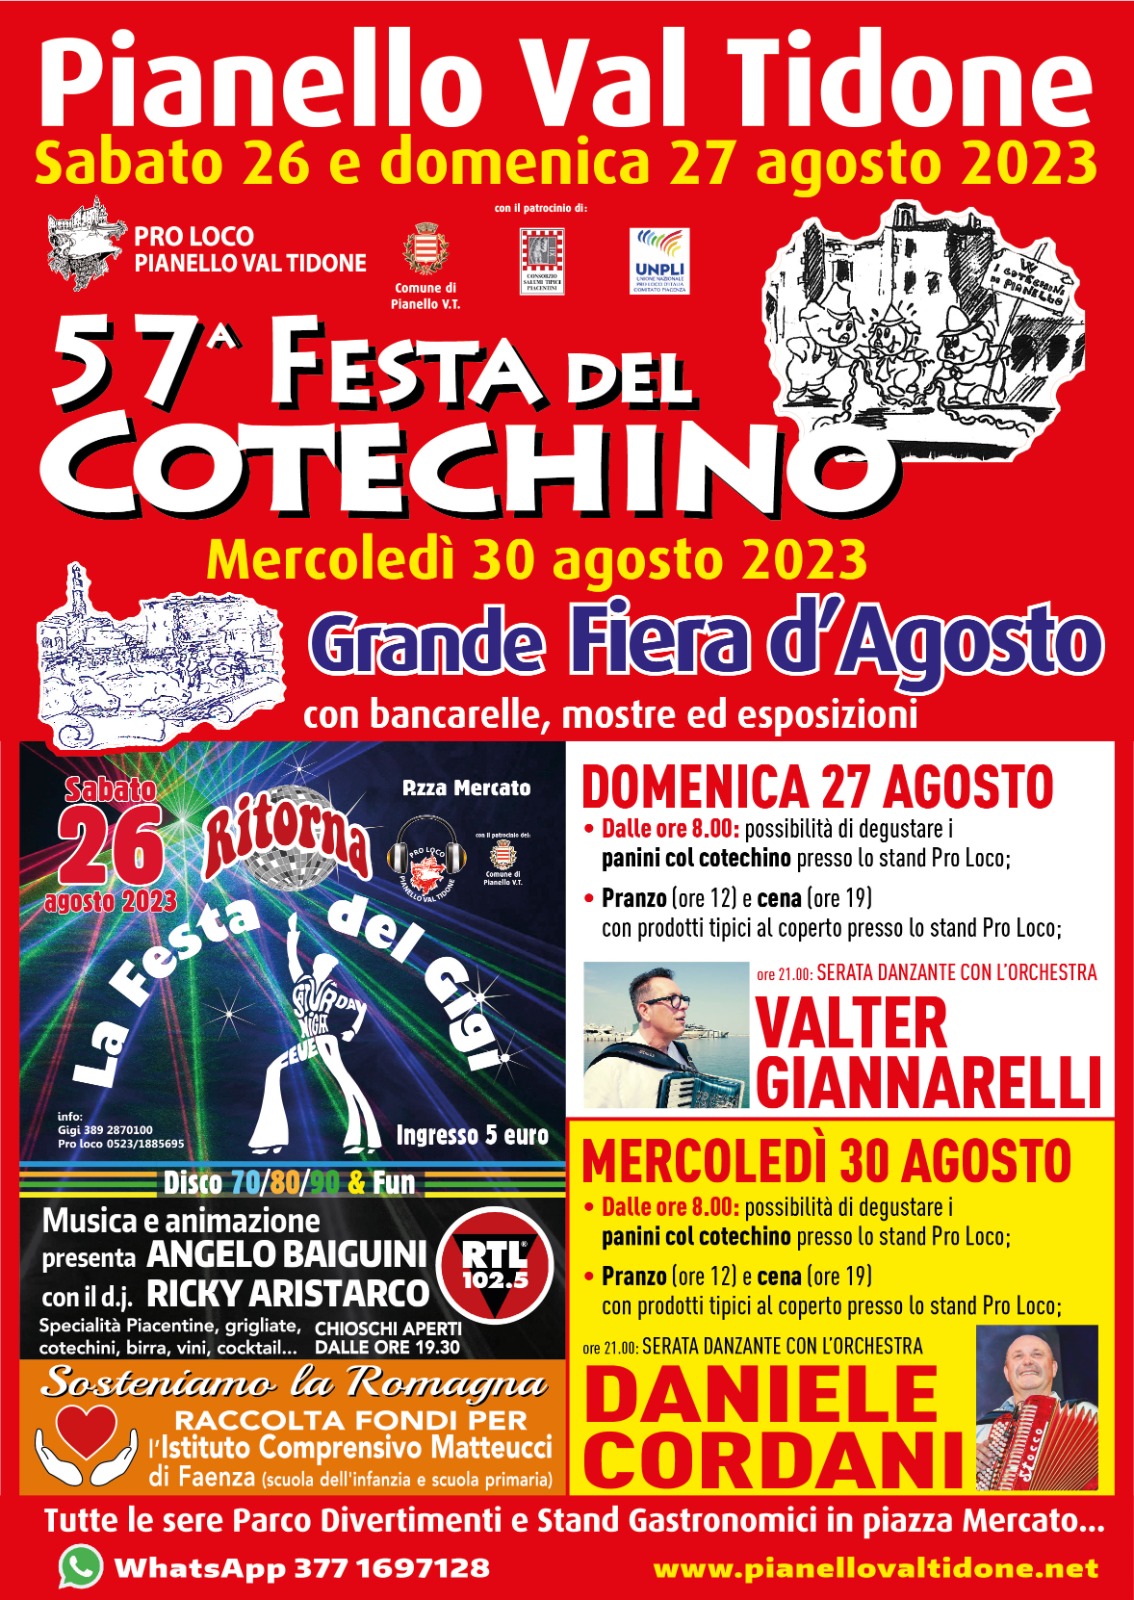 Festa del Cotechino Pianello Val Tidone 2023